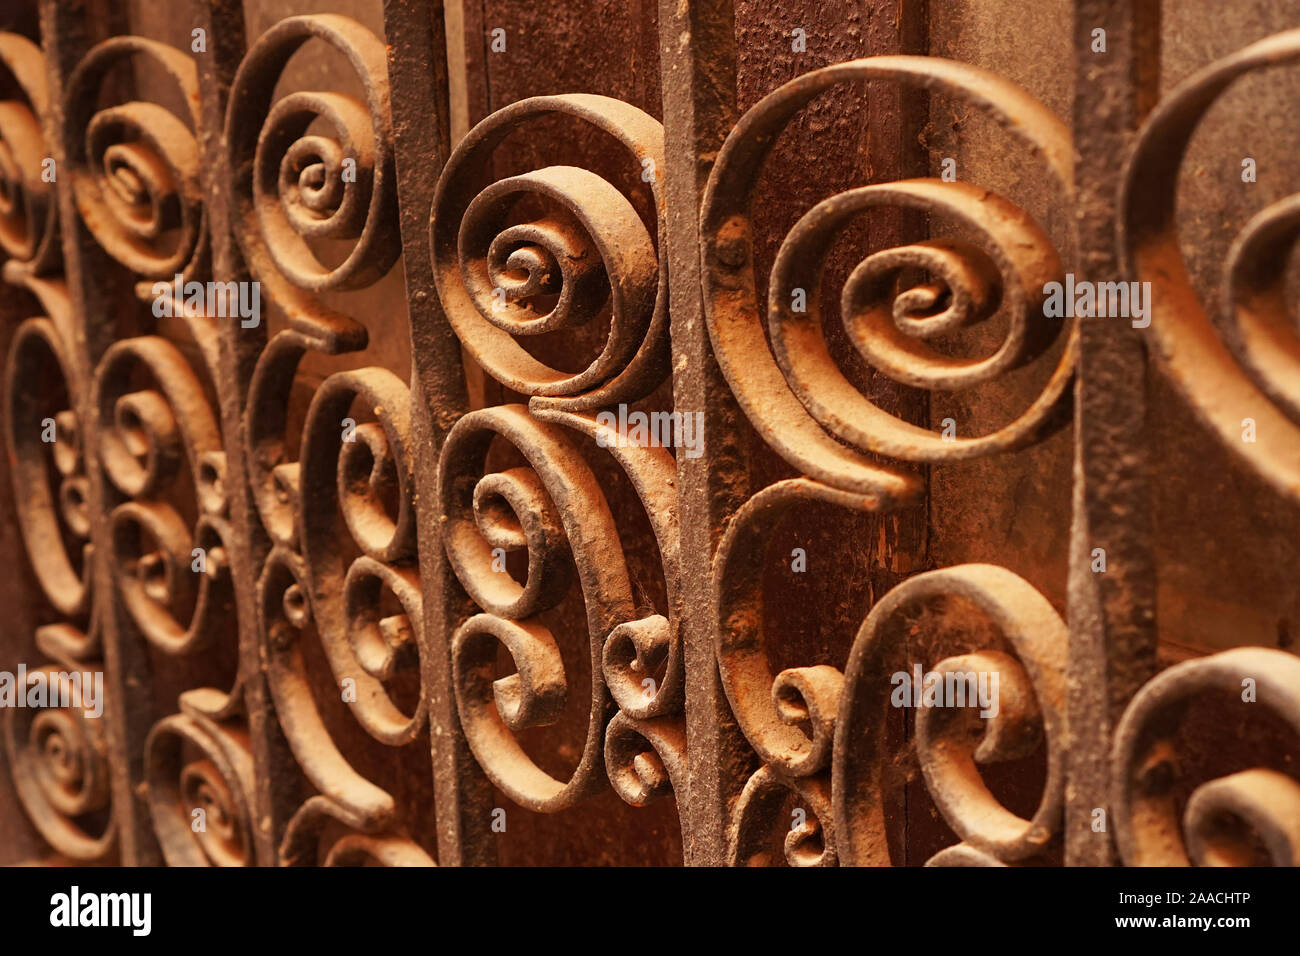 Configuration en spirale sur une barrière métallique décorative Banque D'Images